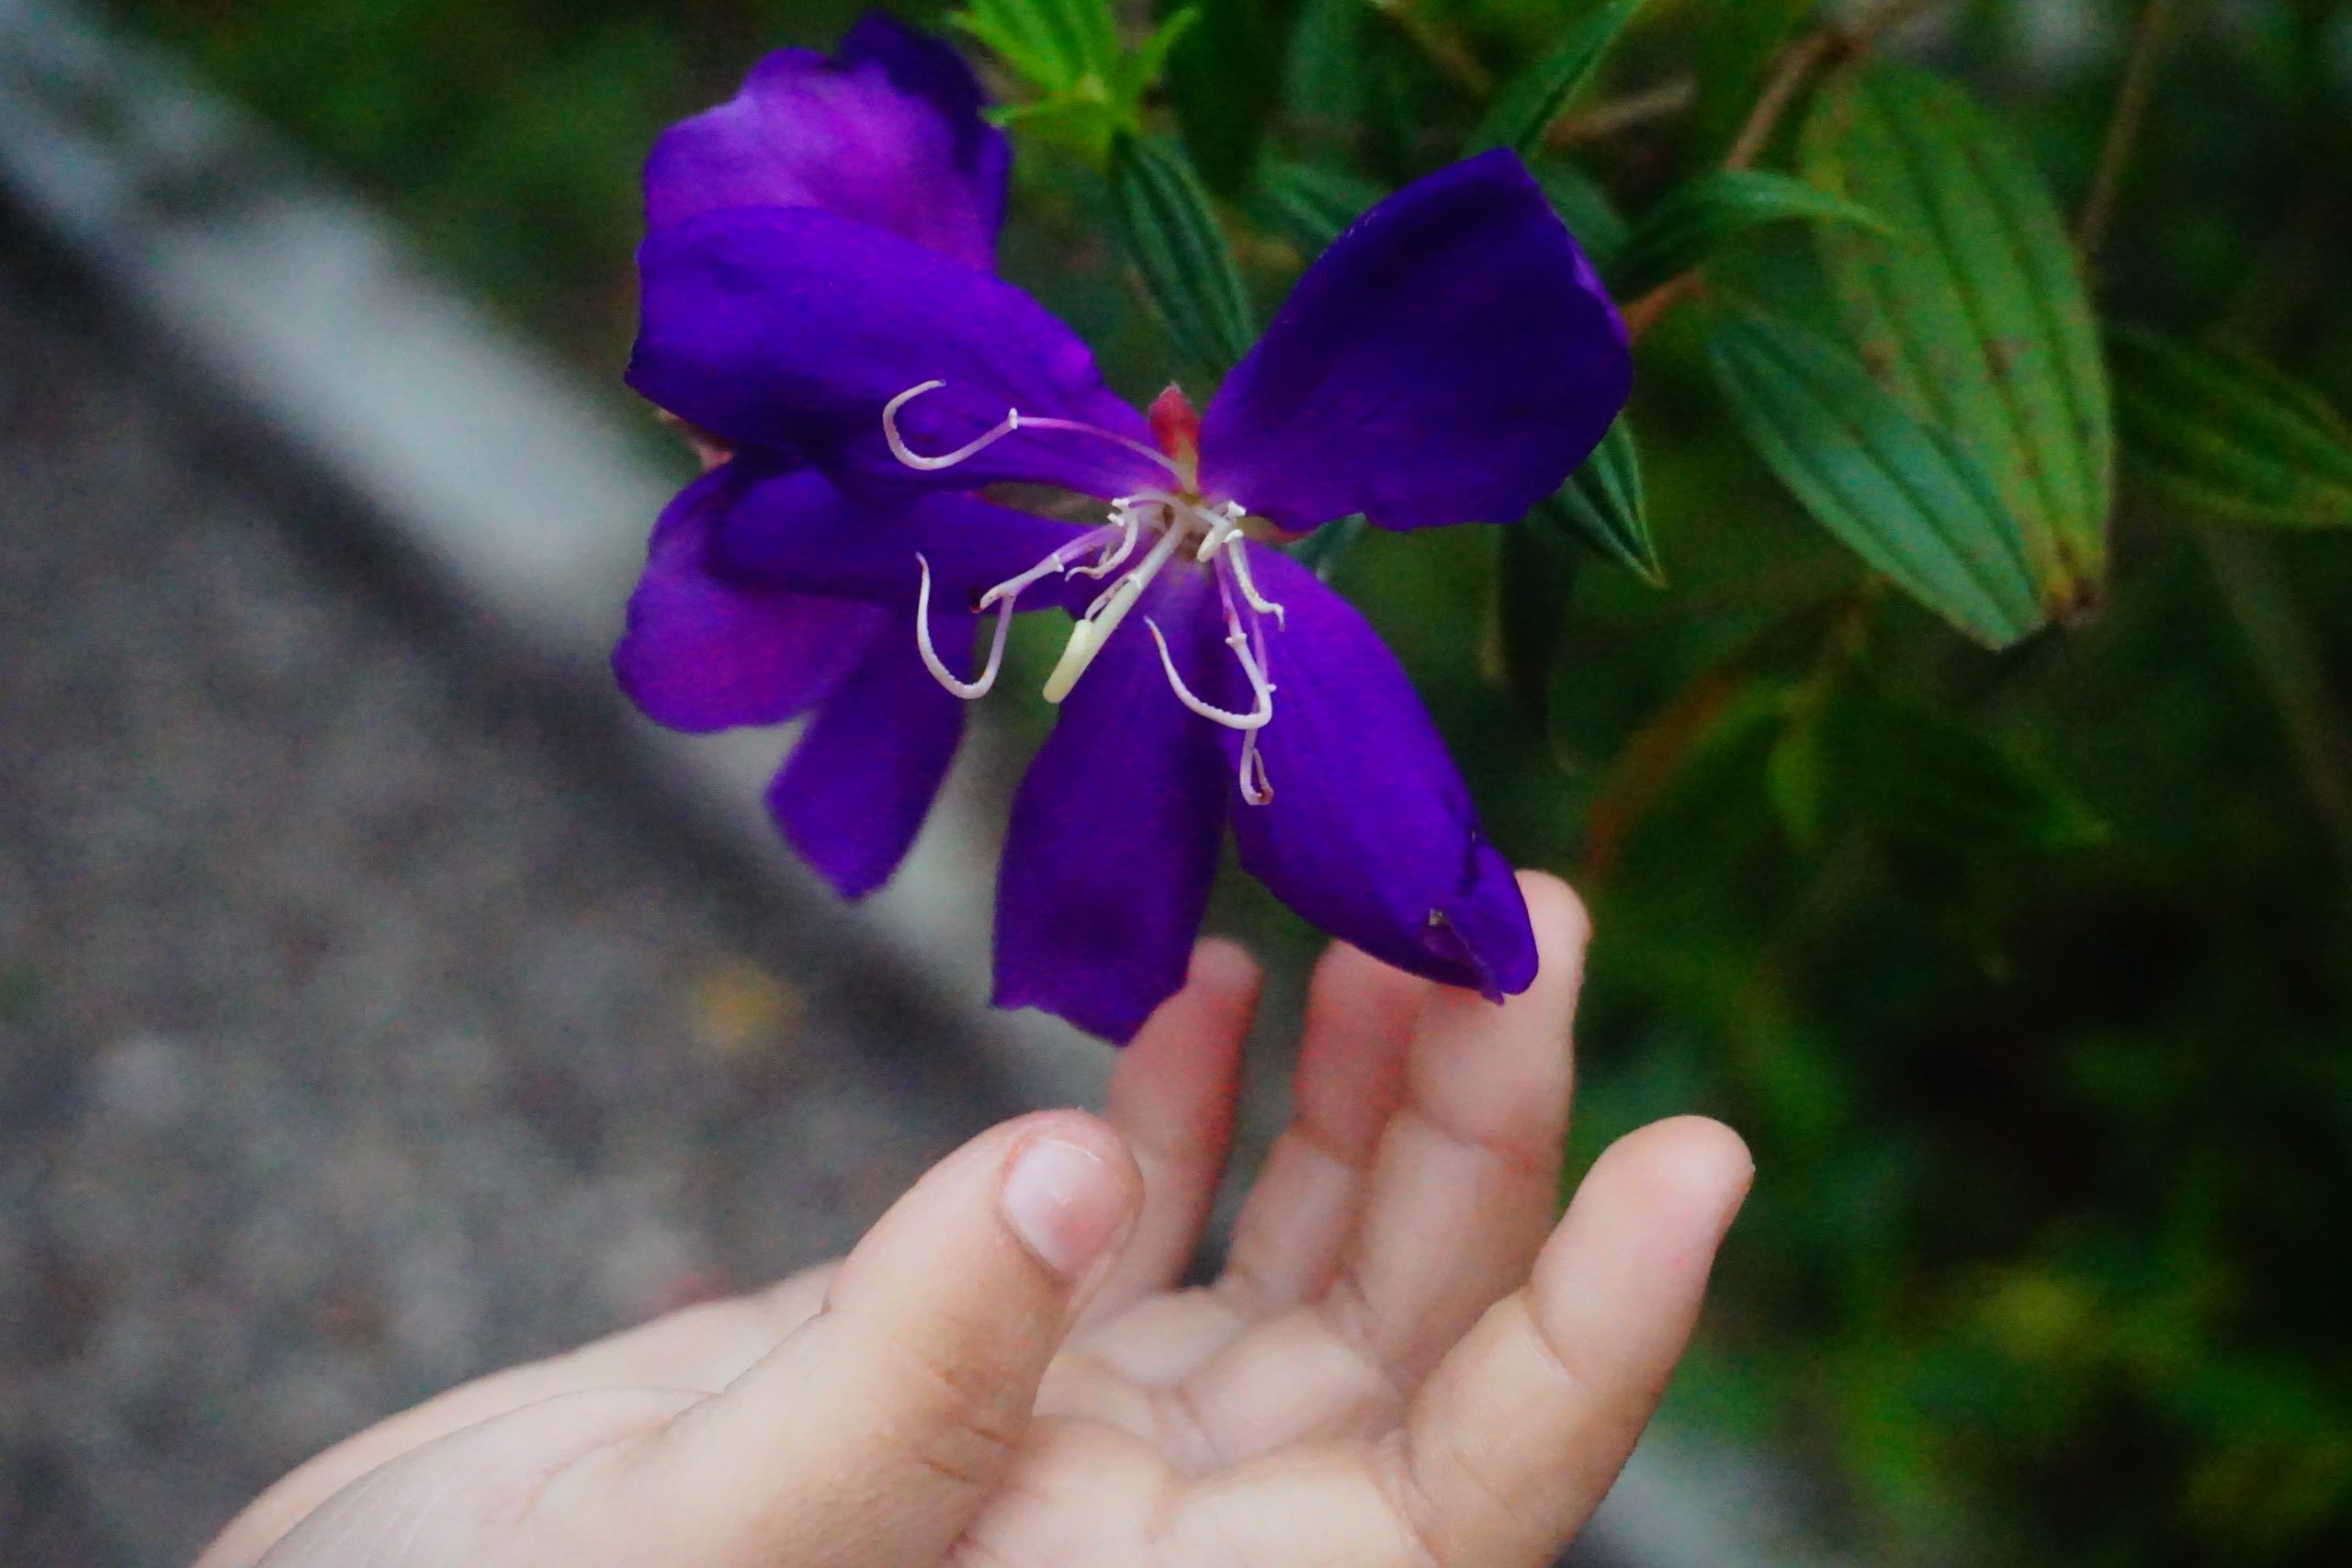 Shining Purple Flower